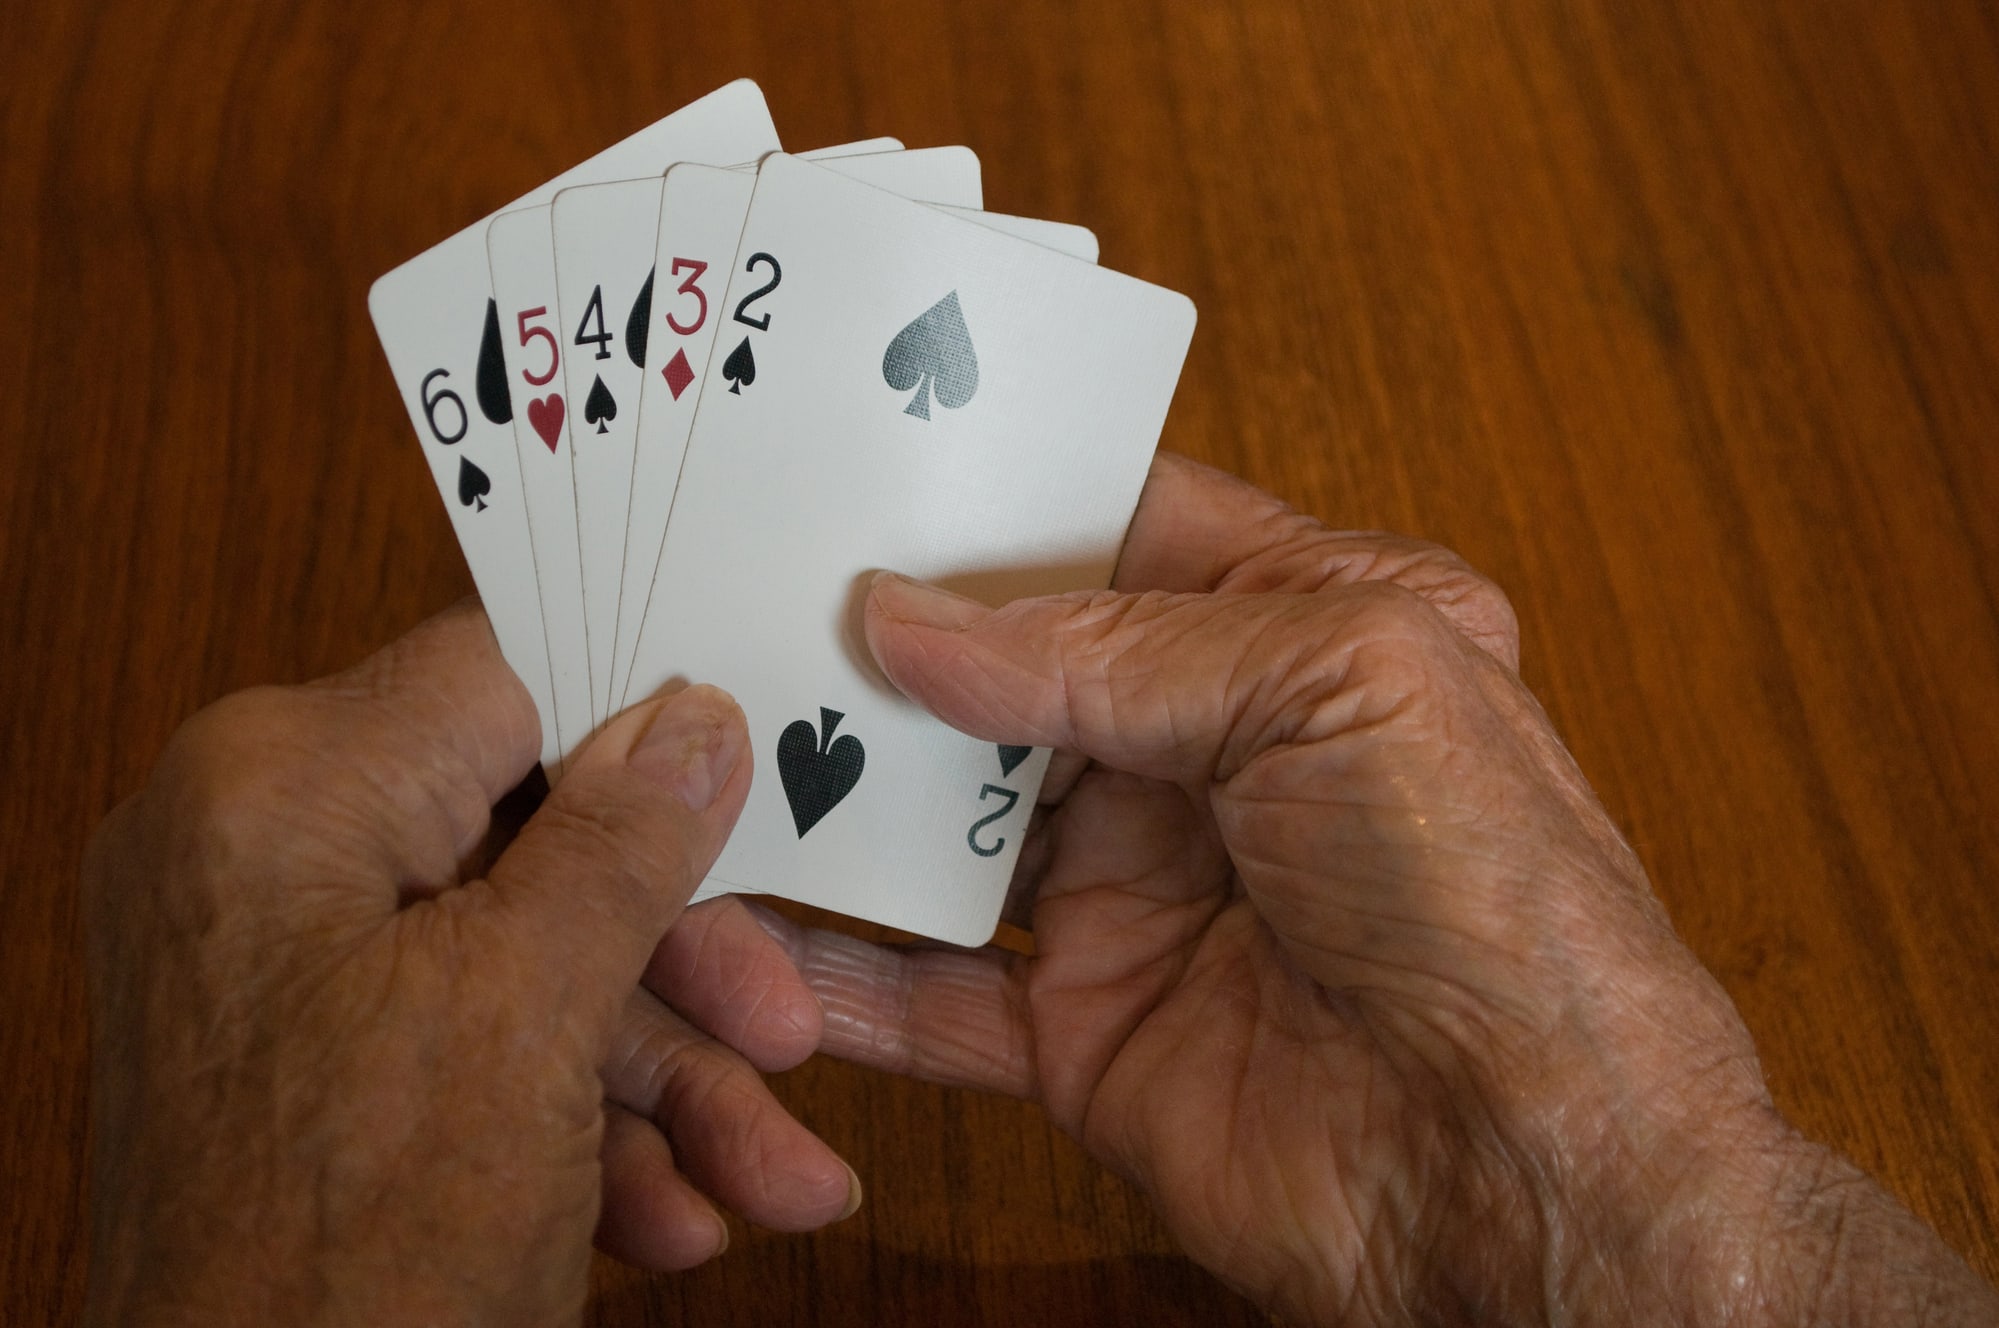 older man gambling problem